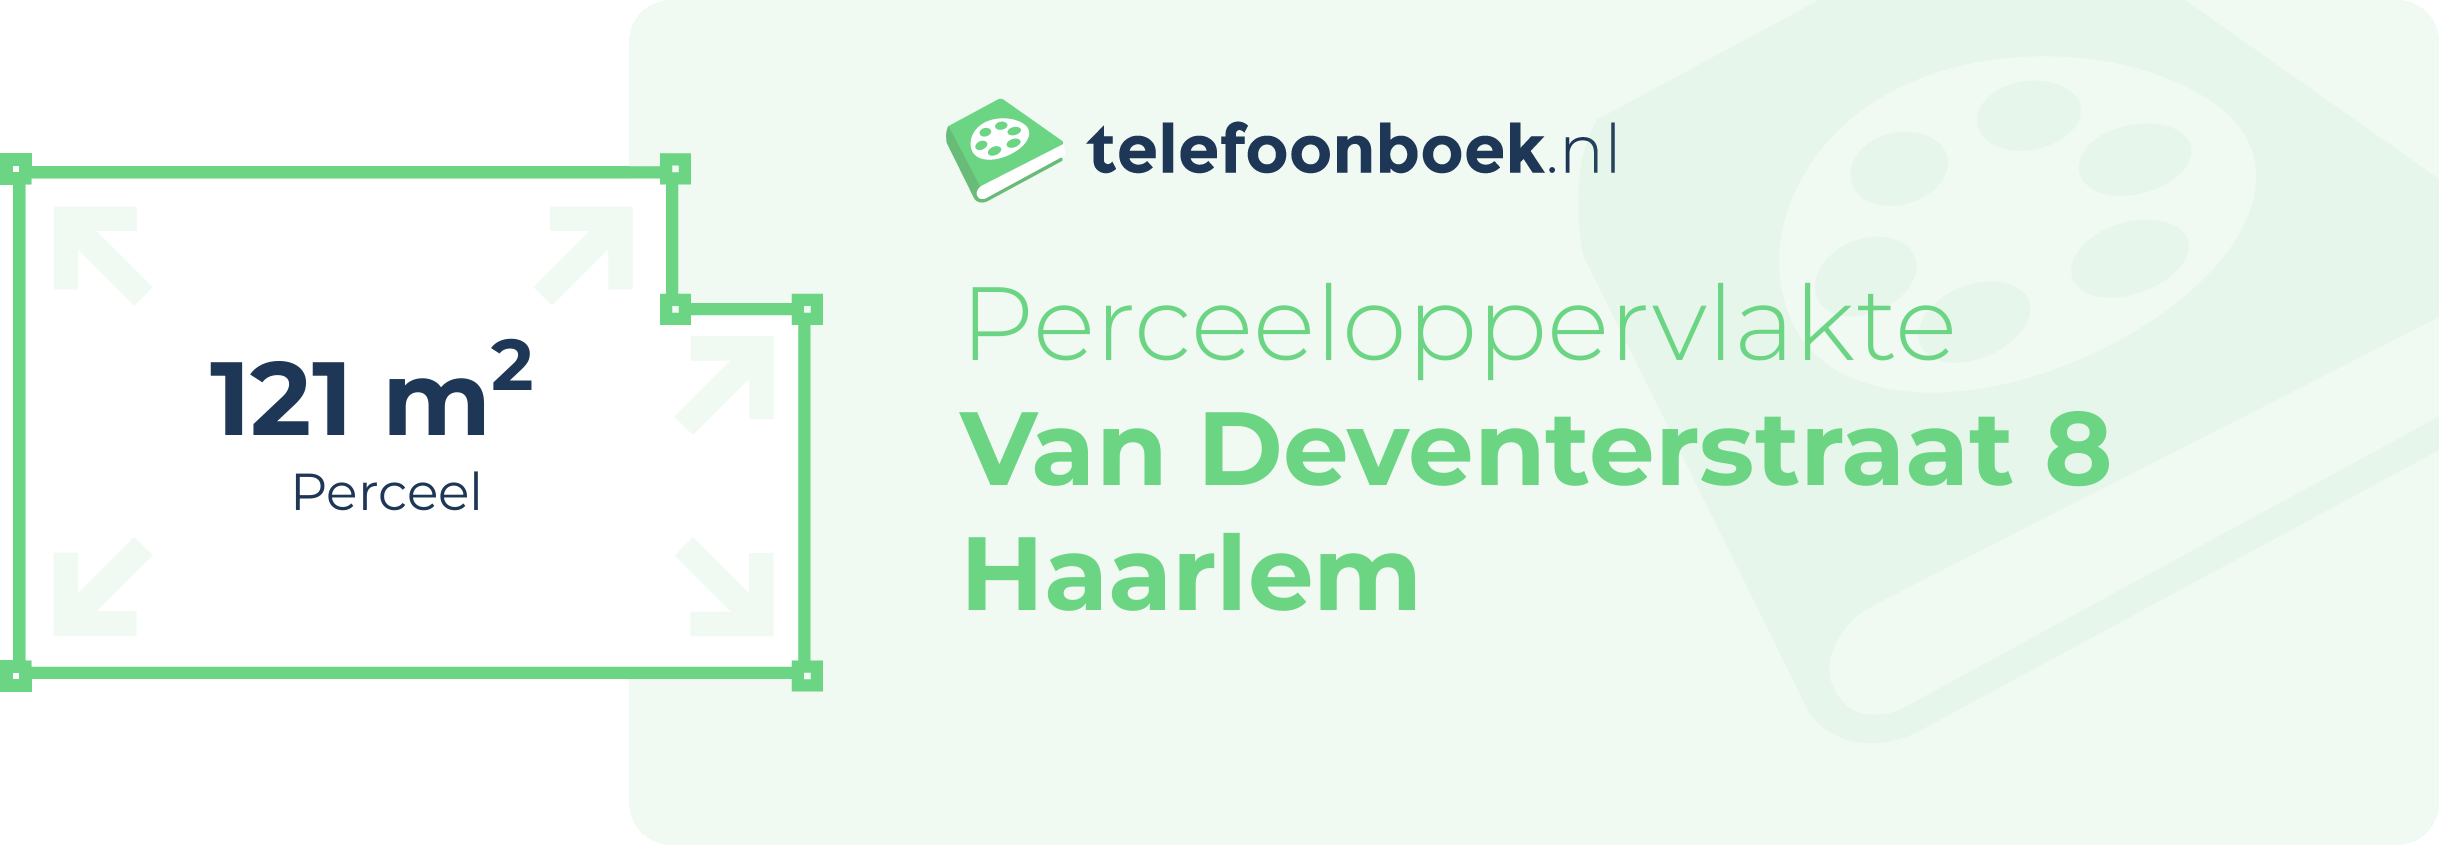 Perceeloppervlakte Van Deventerstraat 8 Haarlem